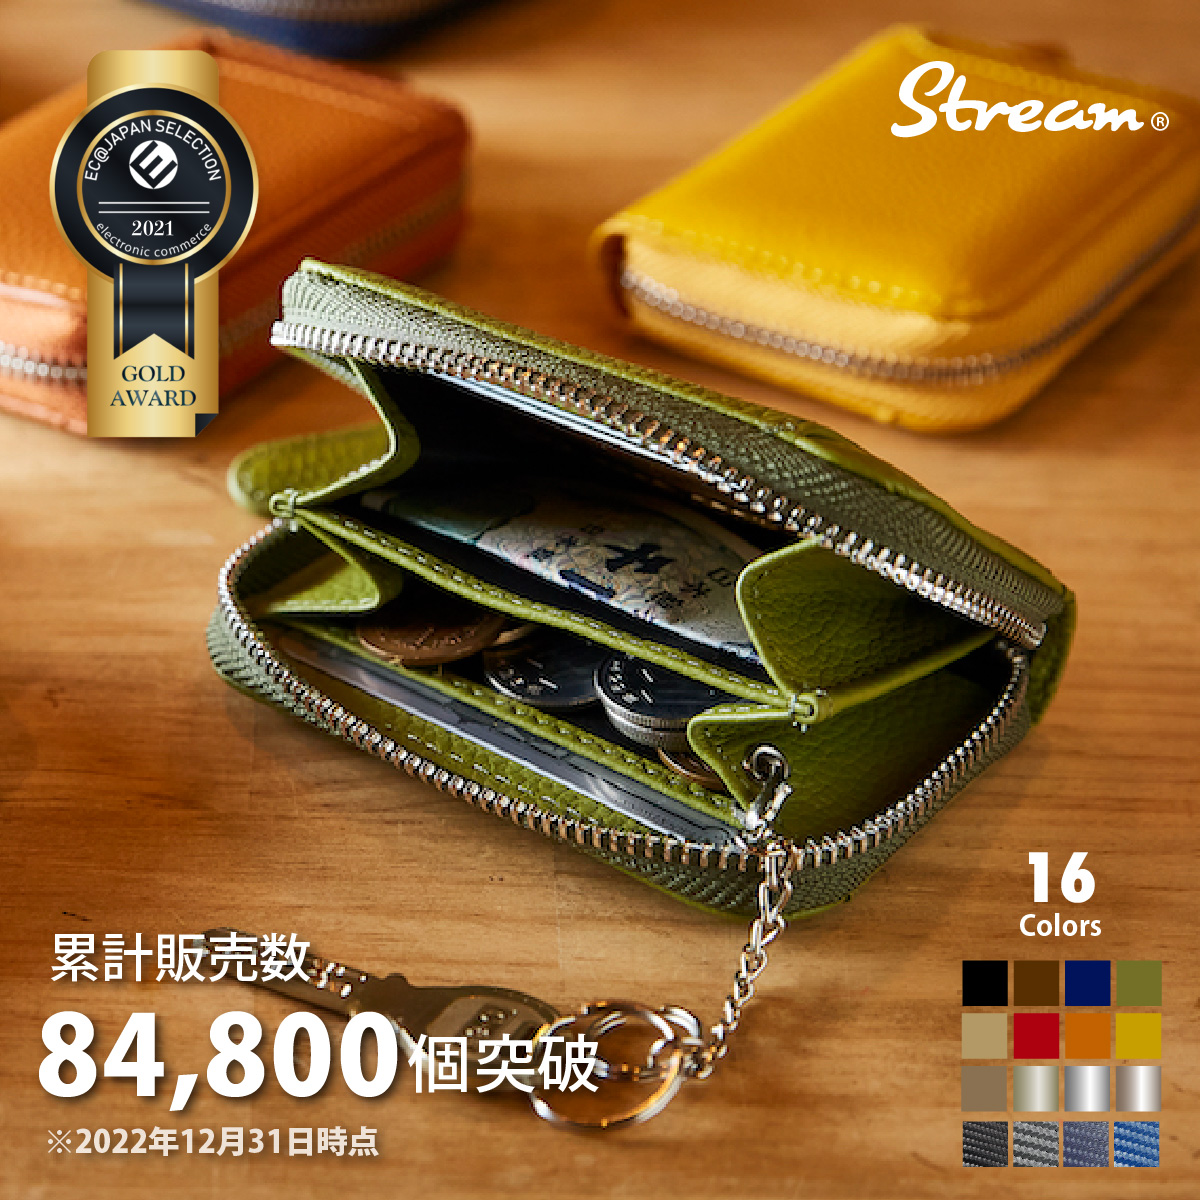 1170円 【67%OFF!】 未使用 イタリア製 革製長財布とコインケースの2つセット